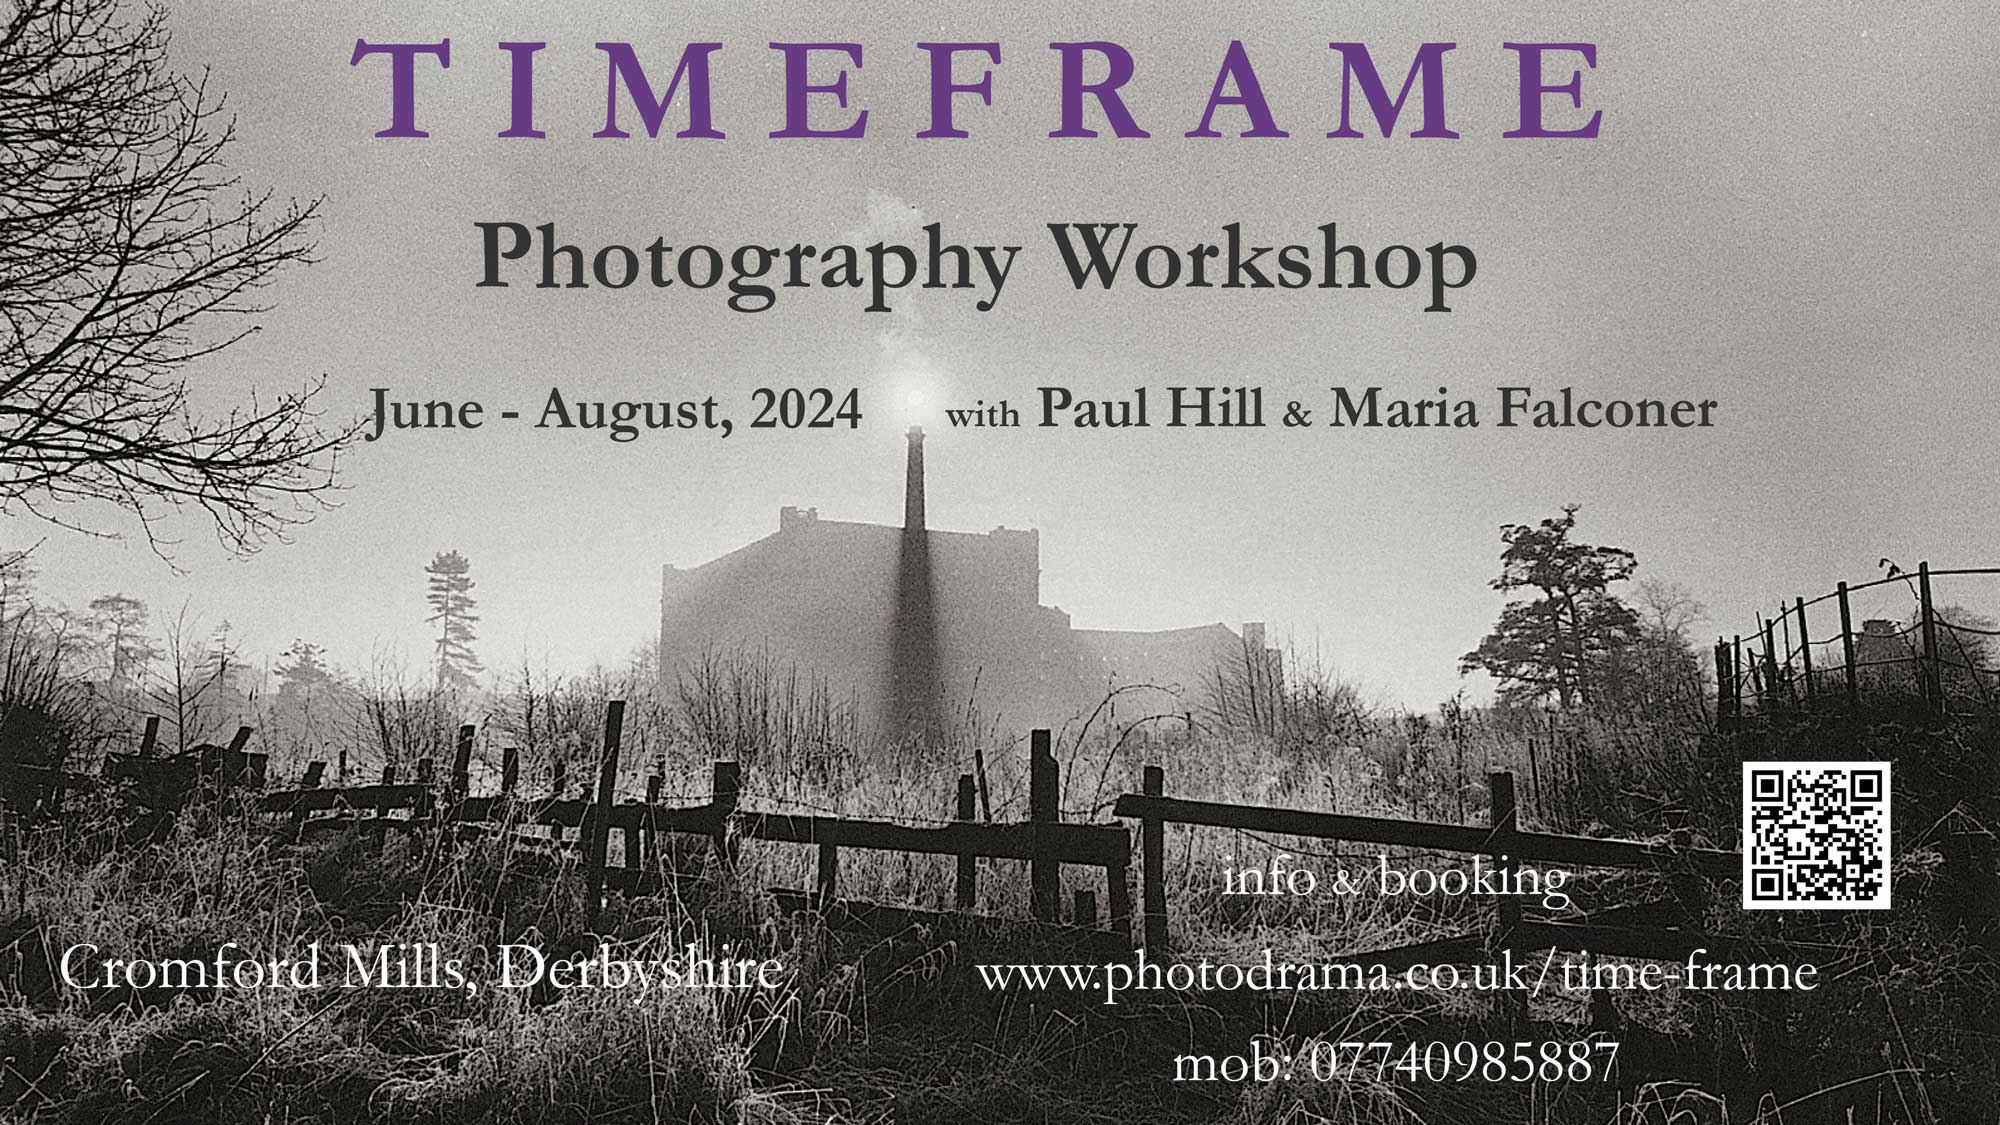 Timeframe photography workshop at Cromford Mills